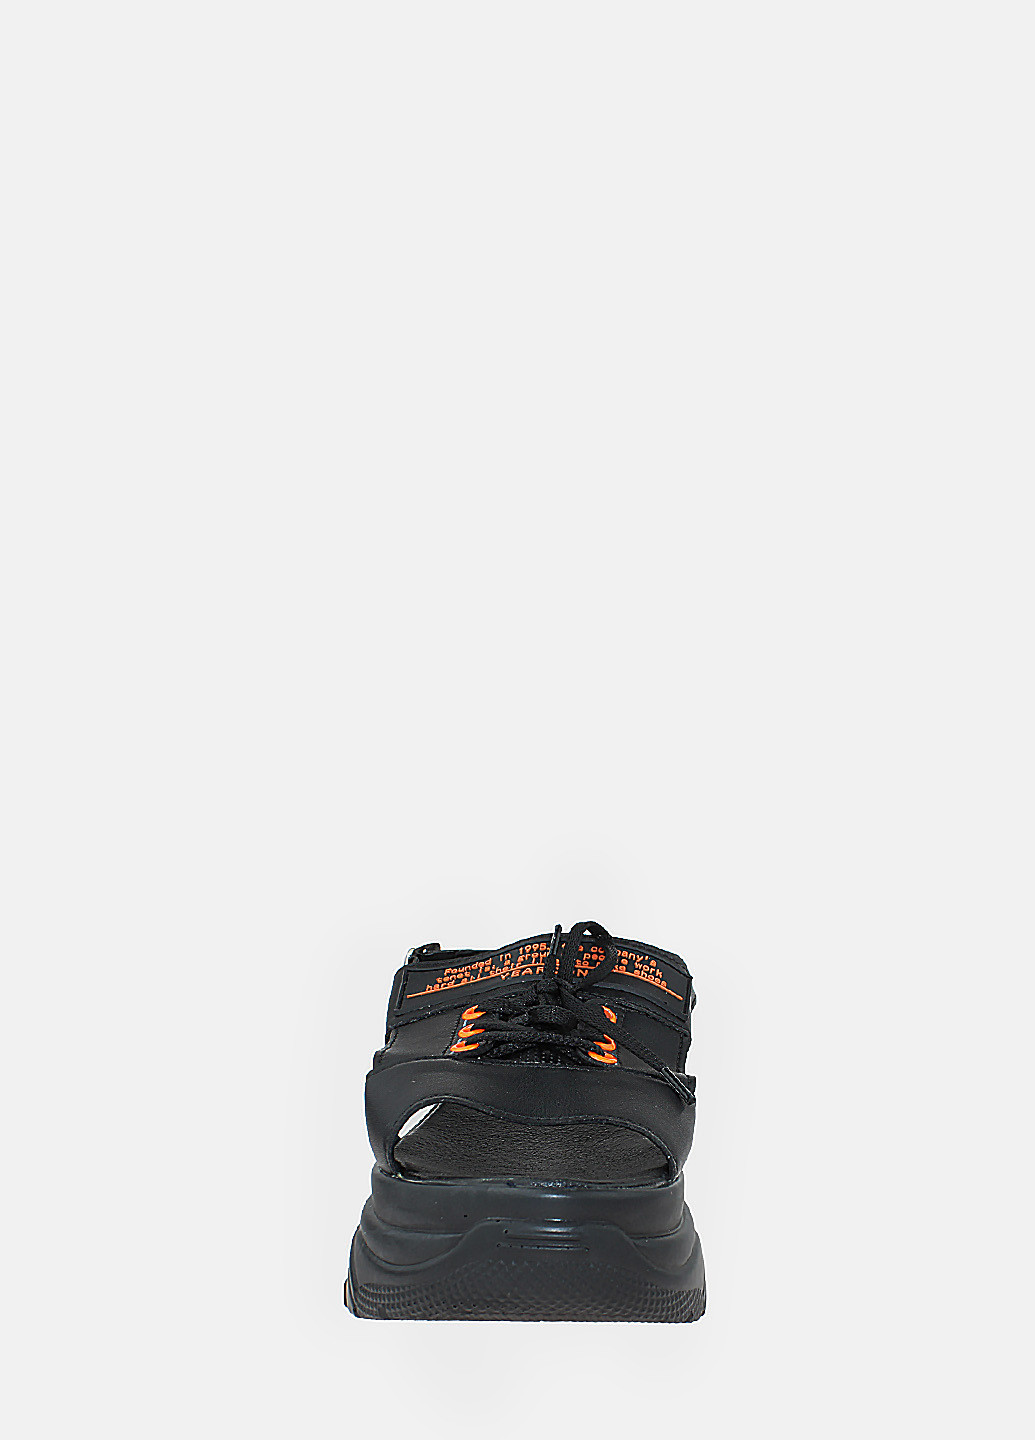 Черные босоножки re2624-1 черный-оранжевый El passo